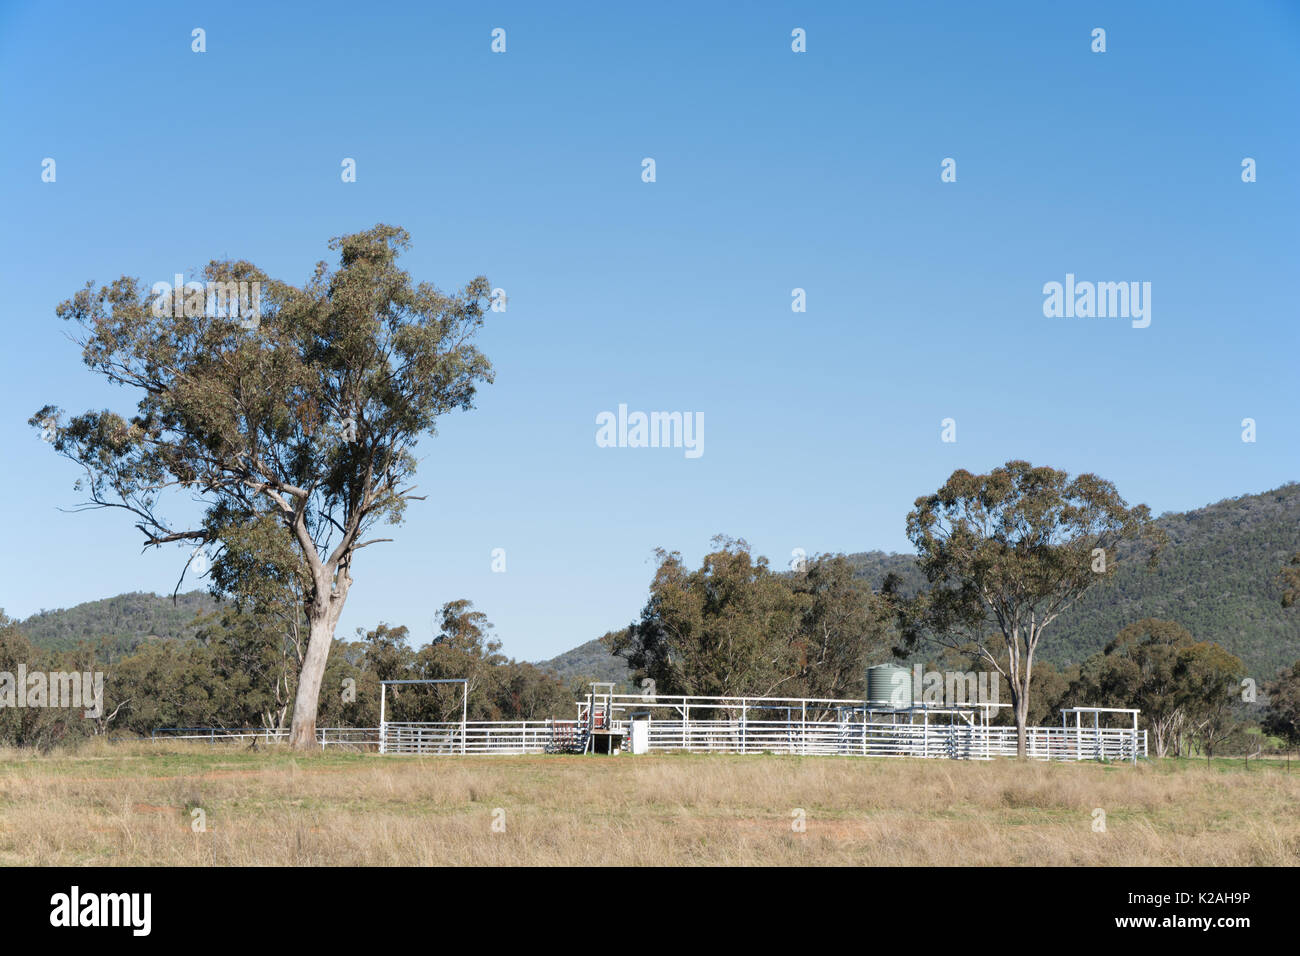 Chantiers bovins australiens sur une ferme du nord de la Nouvelle-Galles du Sud. Banque D'Images